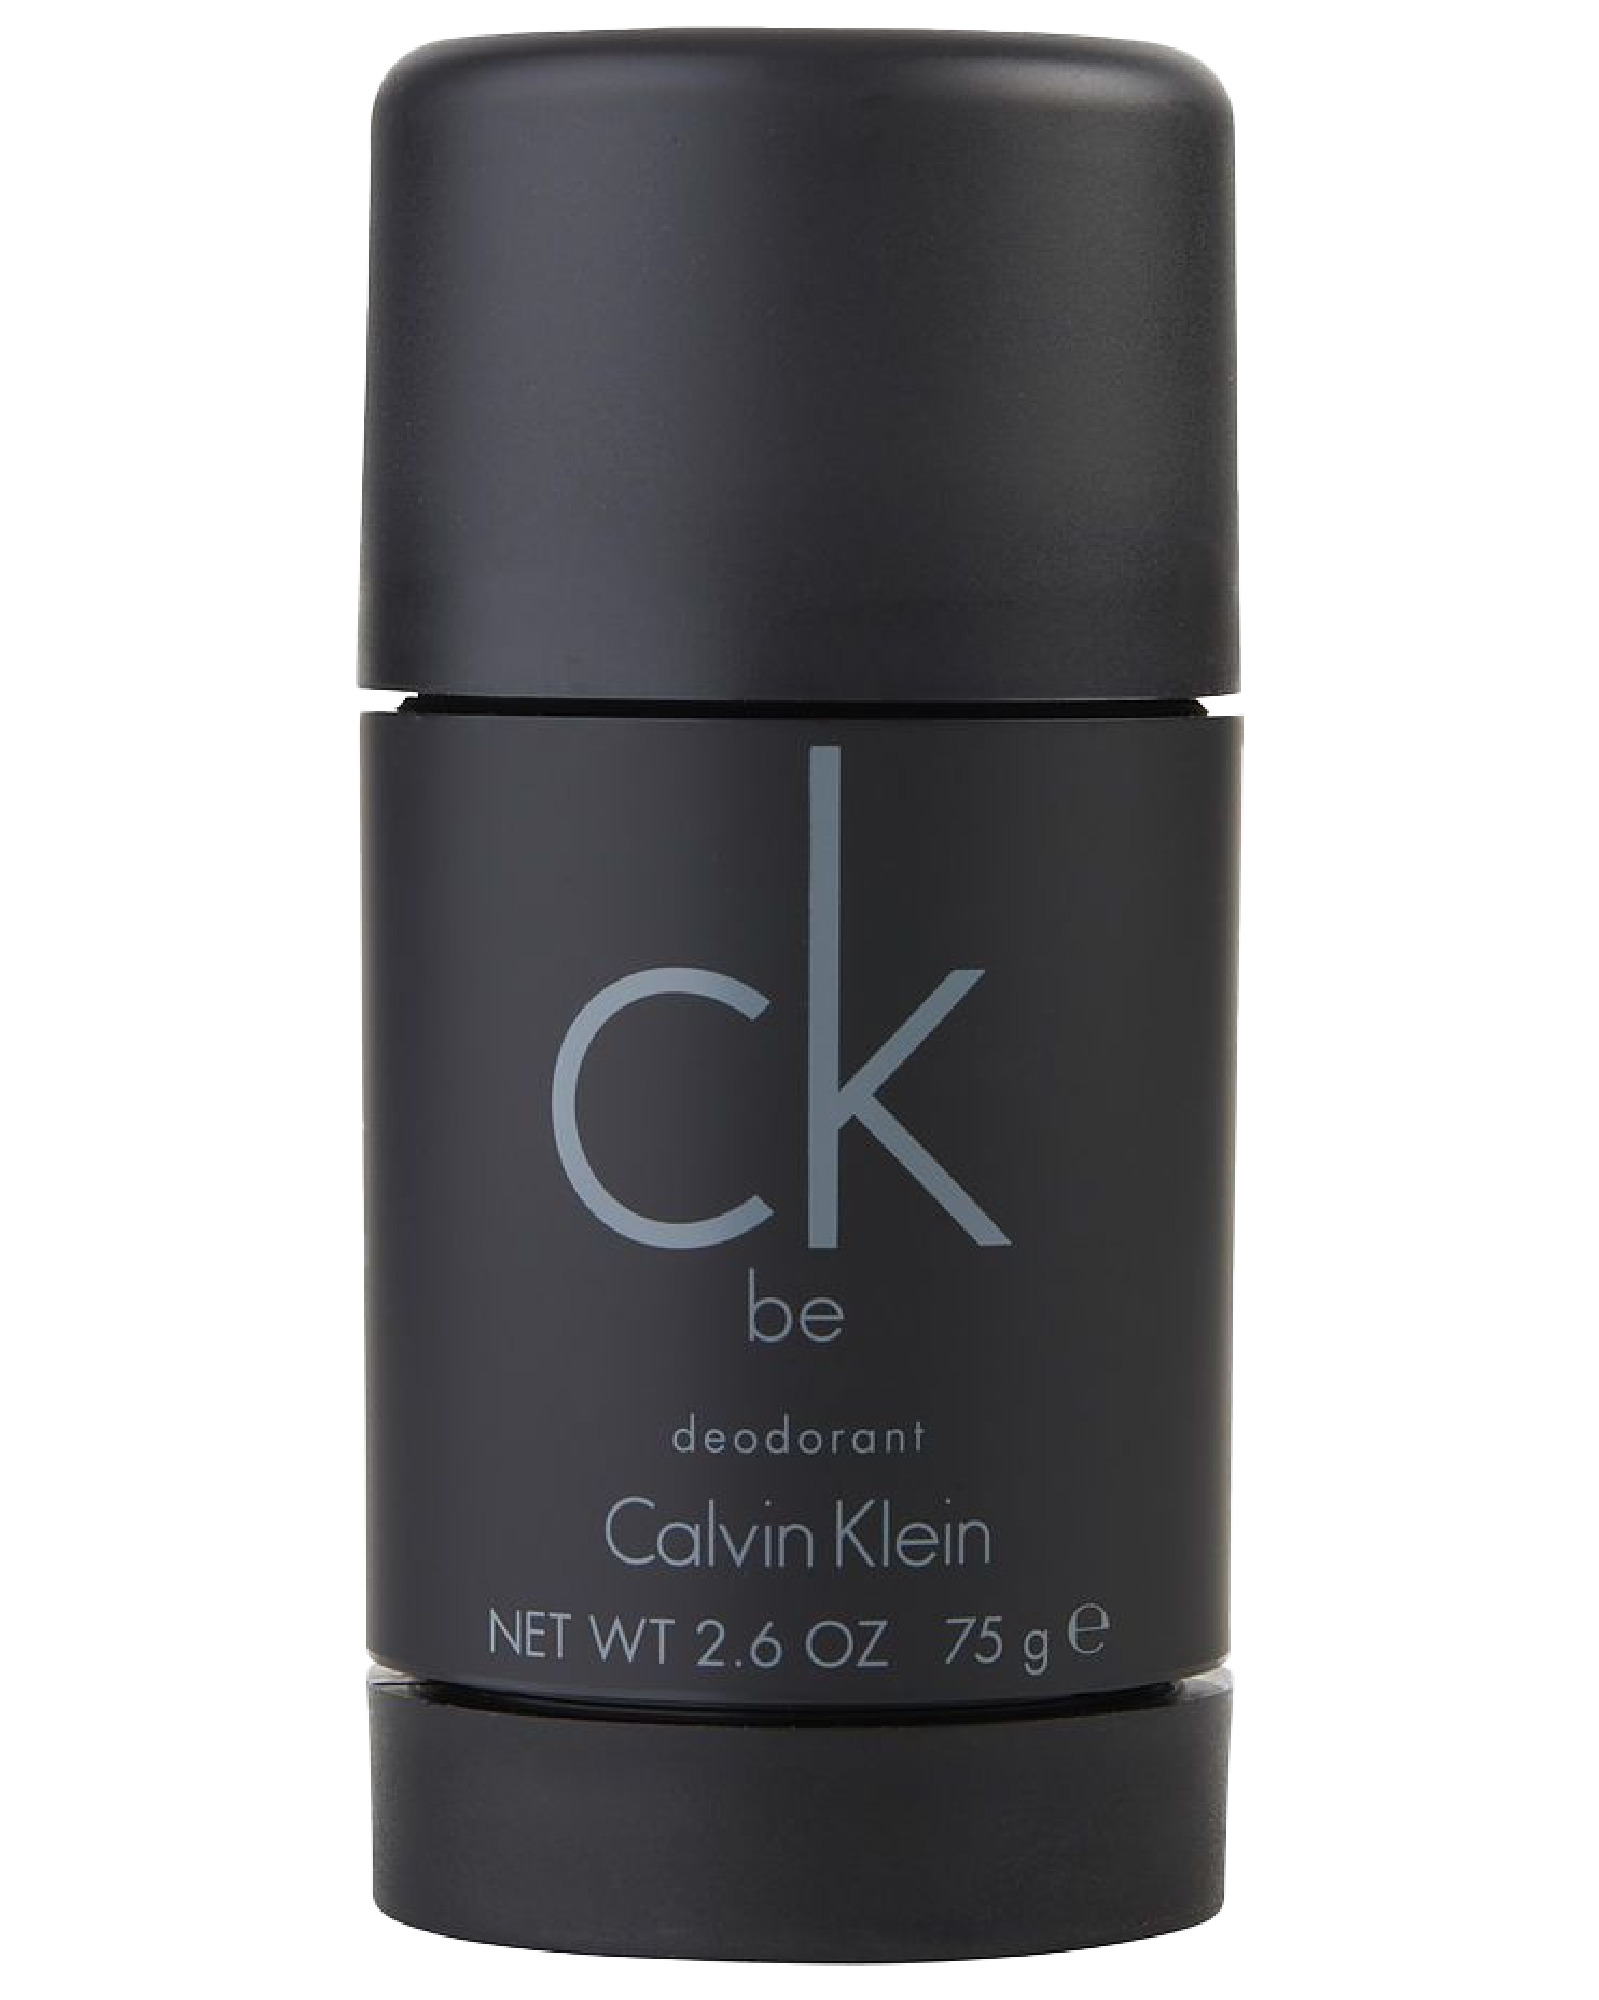 Calvin Klein deodorant CK 1 stift Apotek - g 75 Be